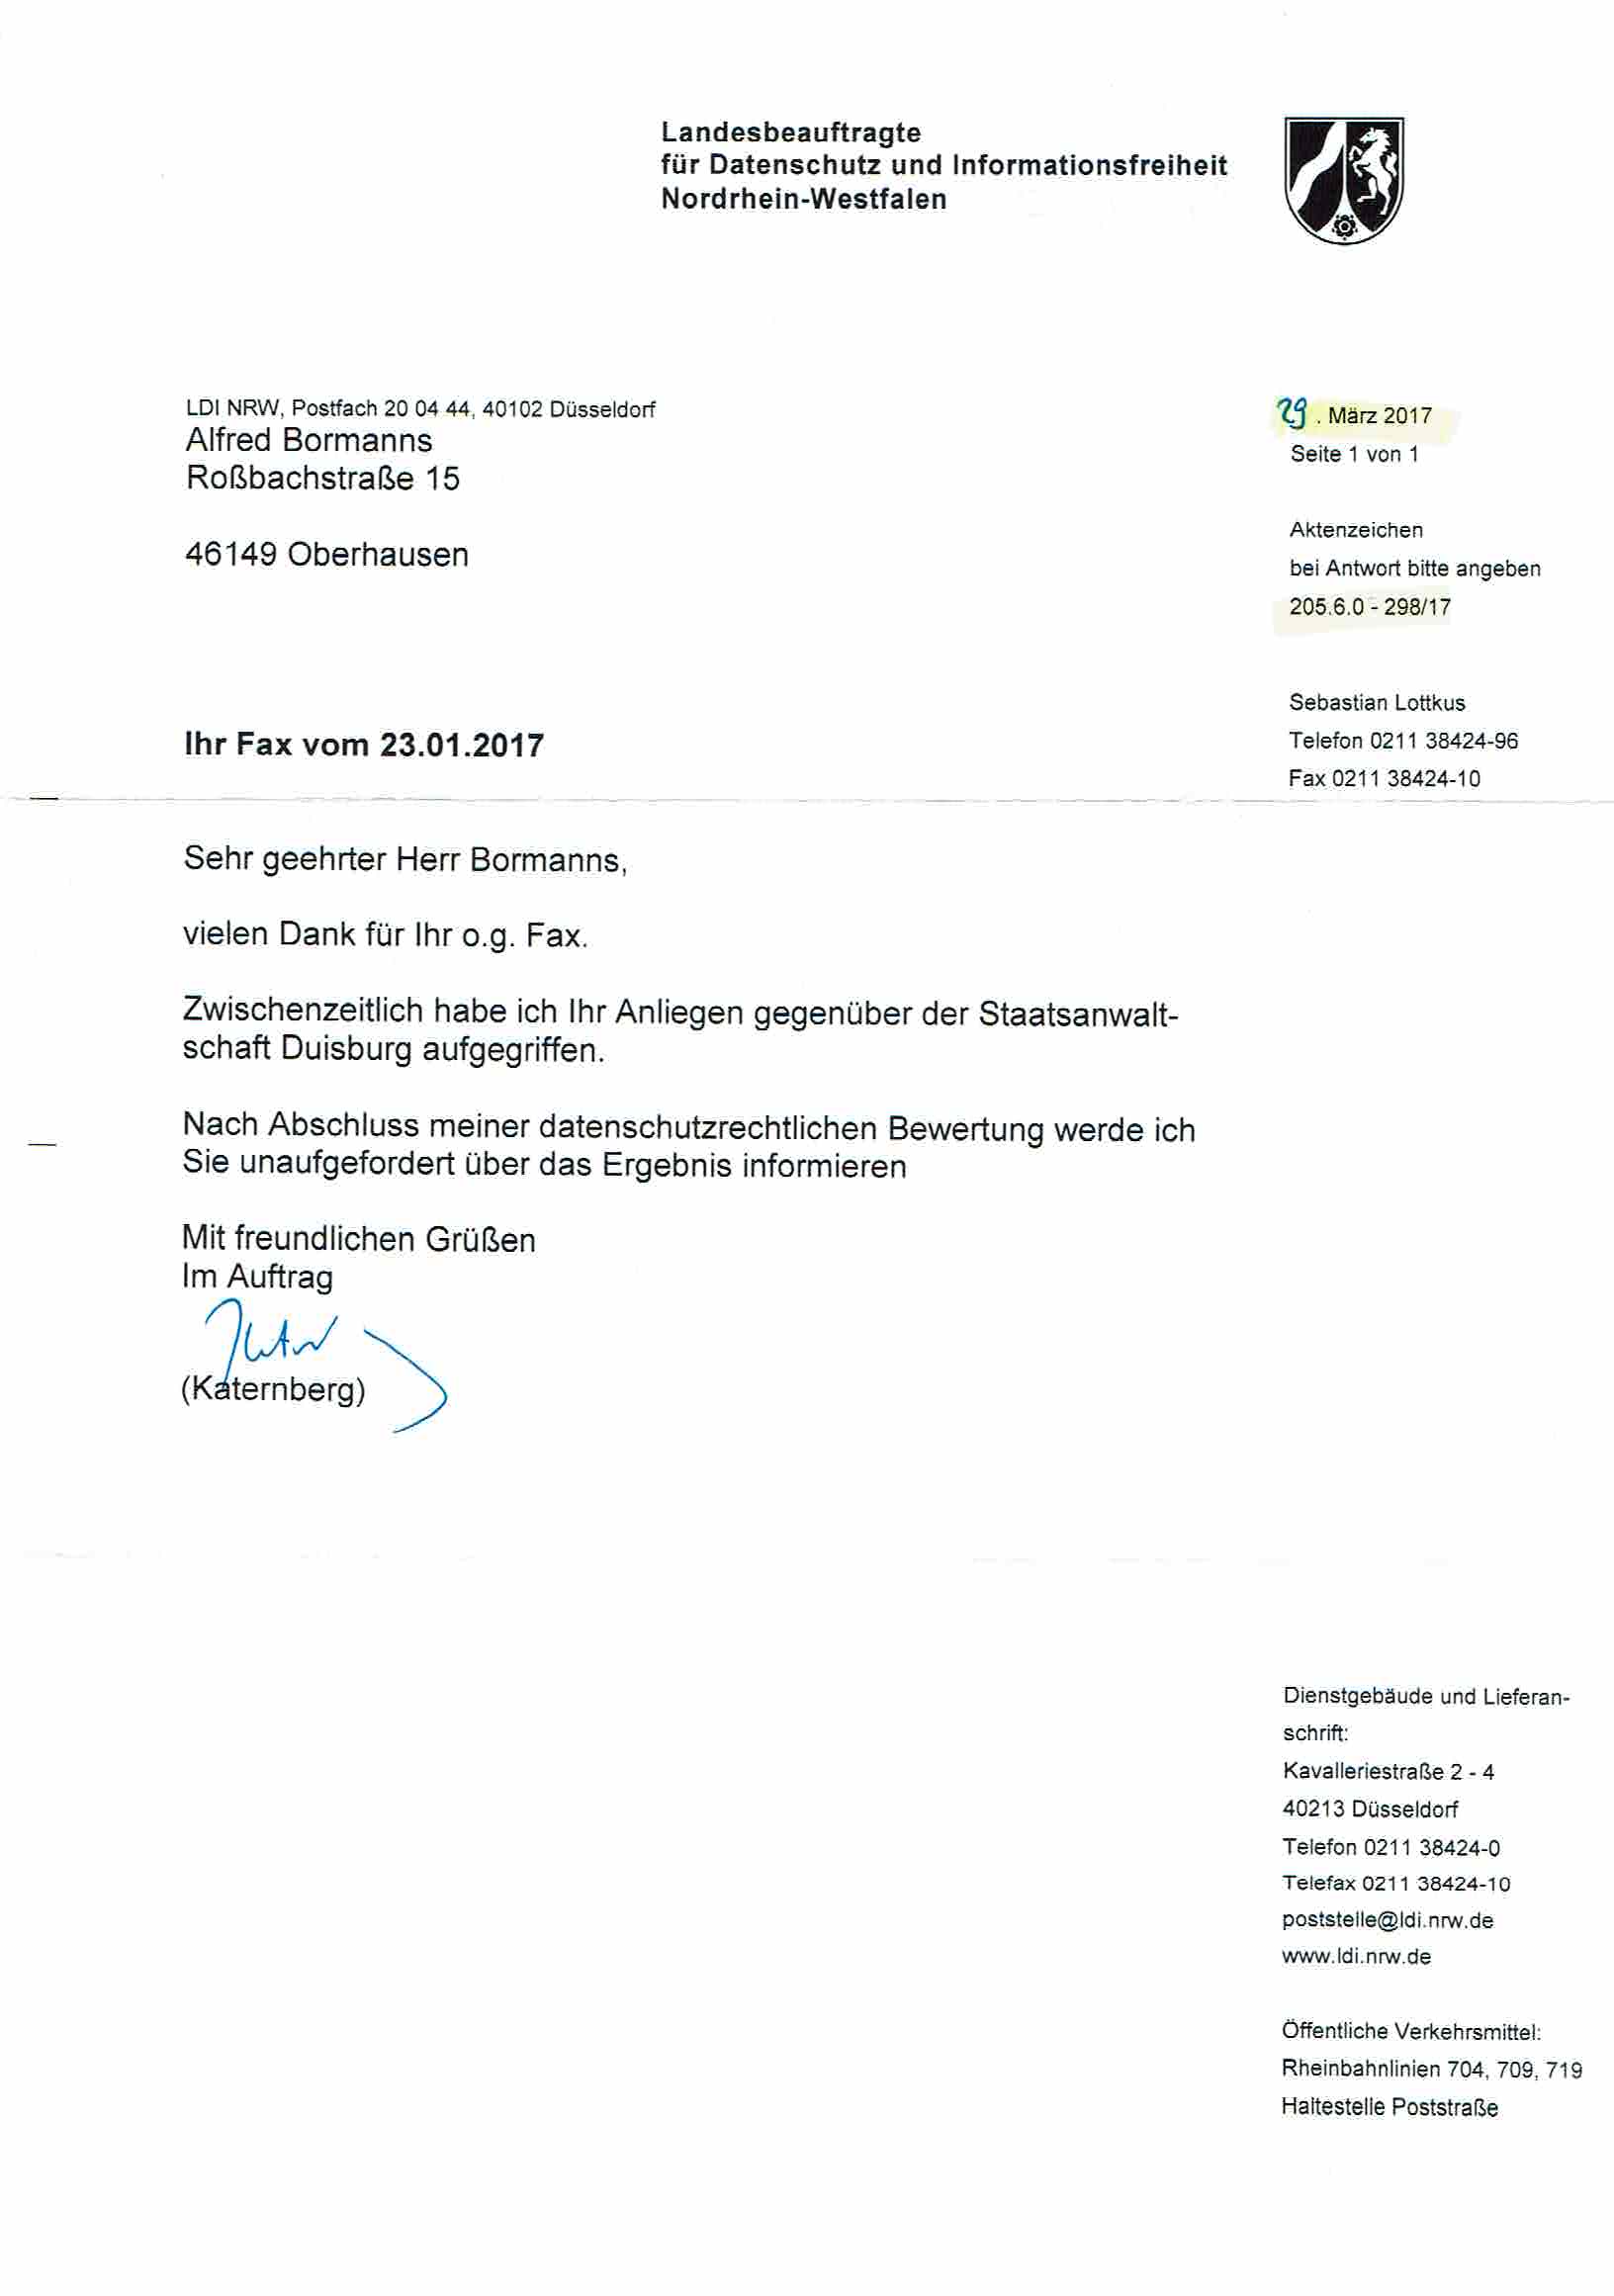 Nachricht der Landesbeauftragen für Datenschutz und Informationsfreiheit Nordrhein-Westfalen vom 29.03.2017